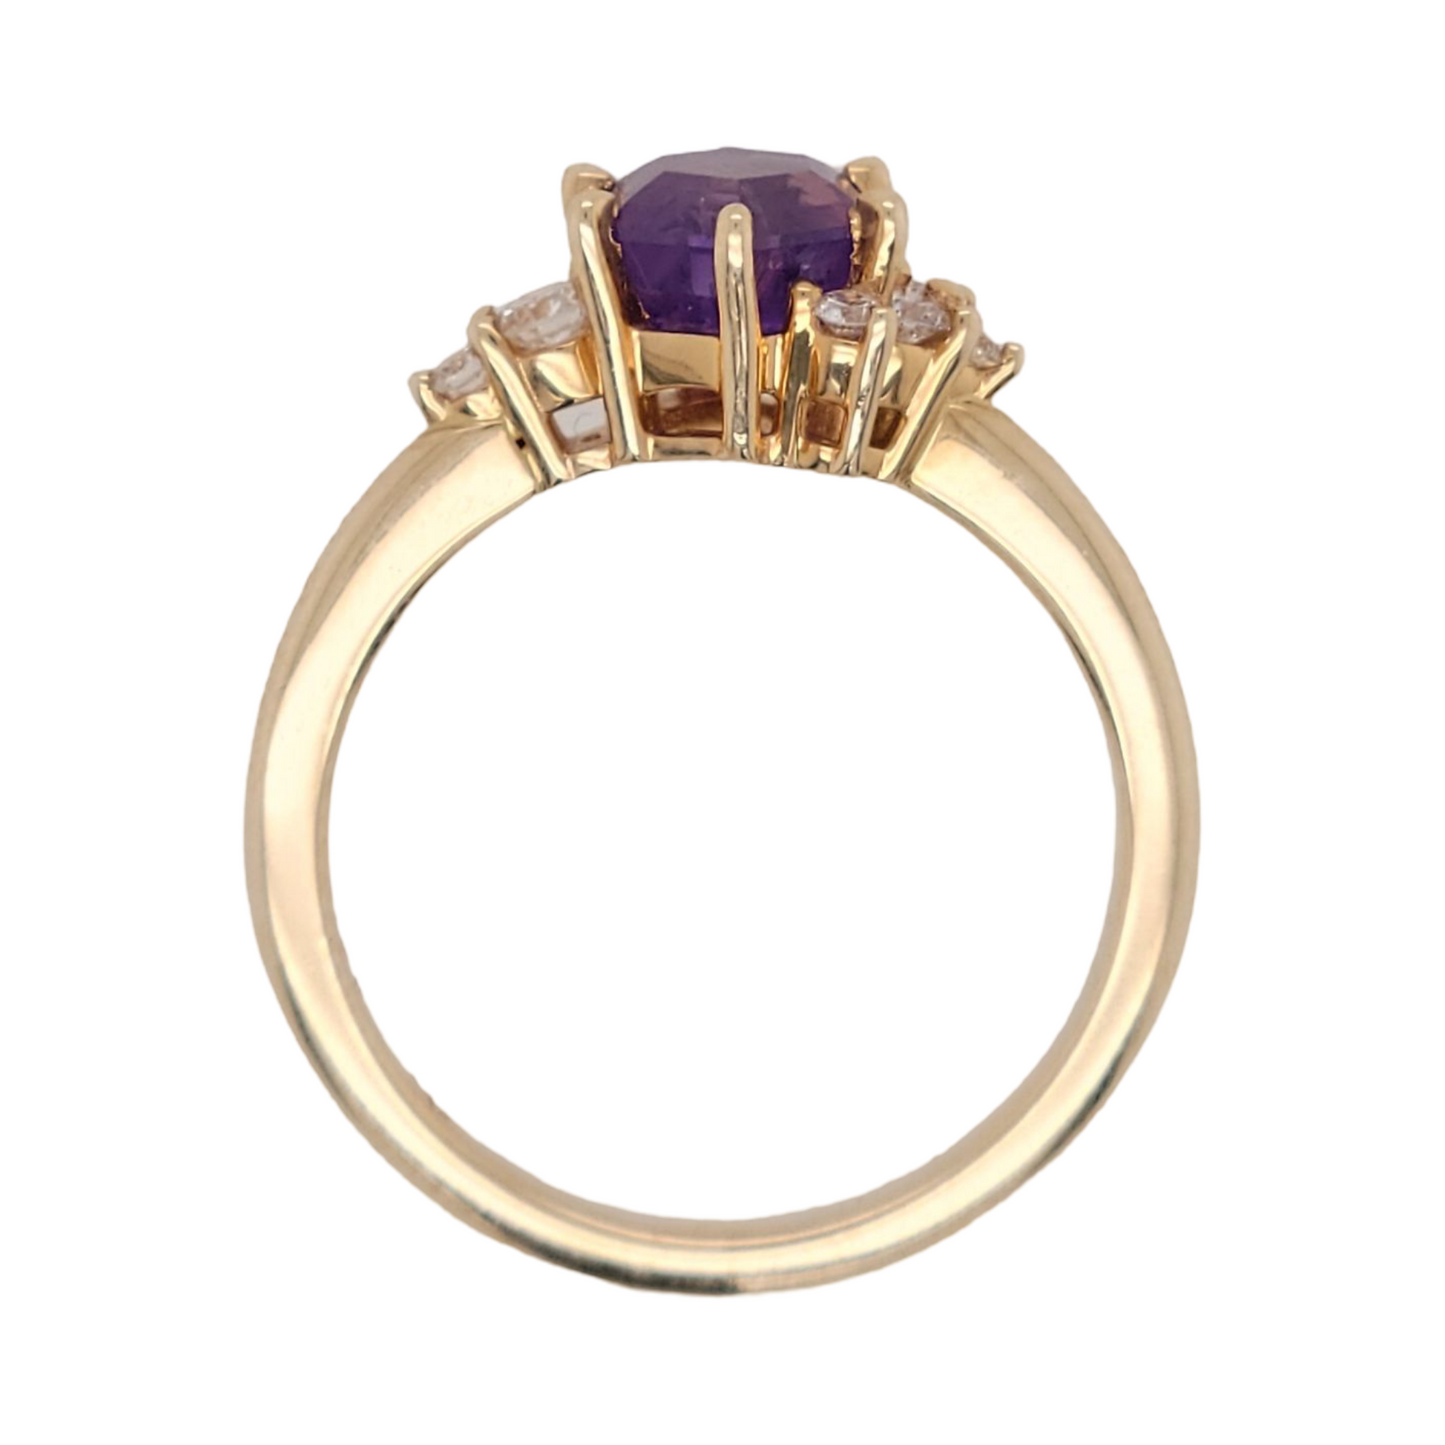 Hexagonal Purple Sapphire Ring